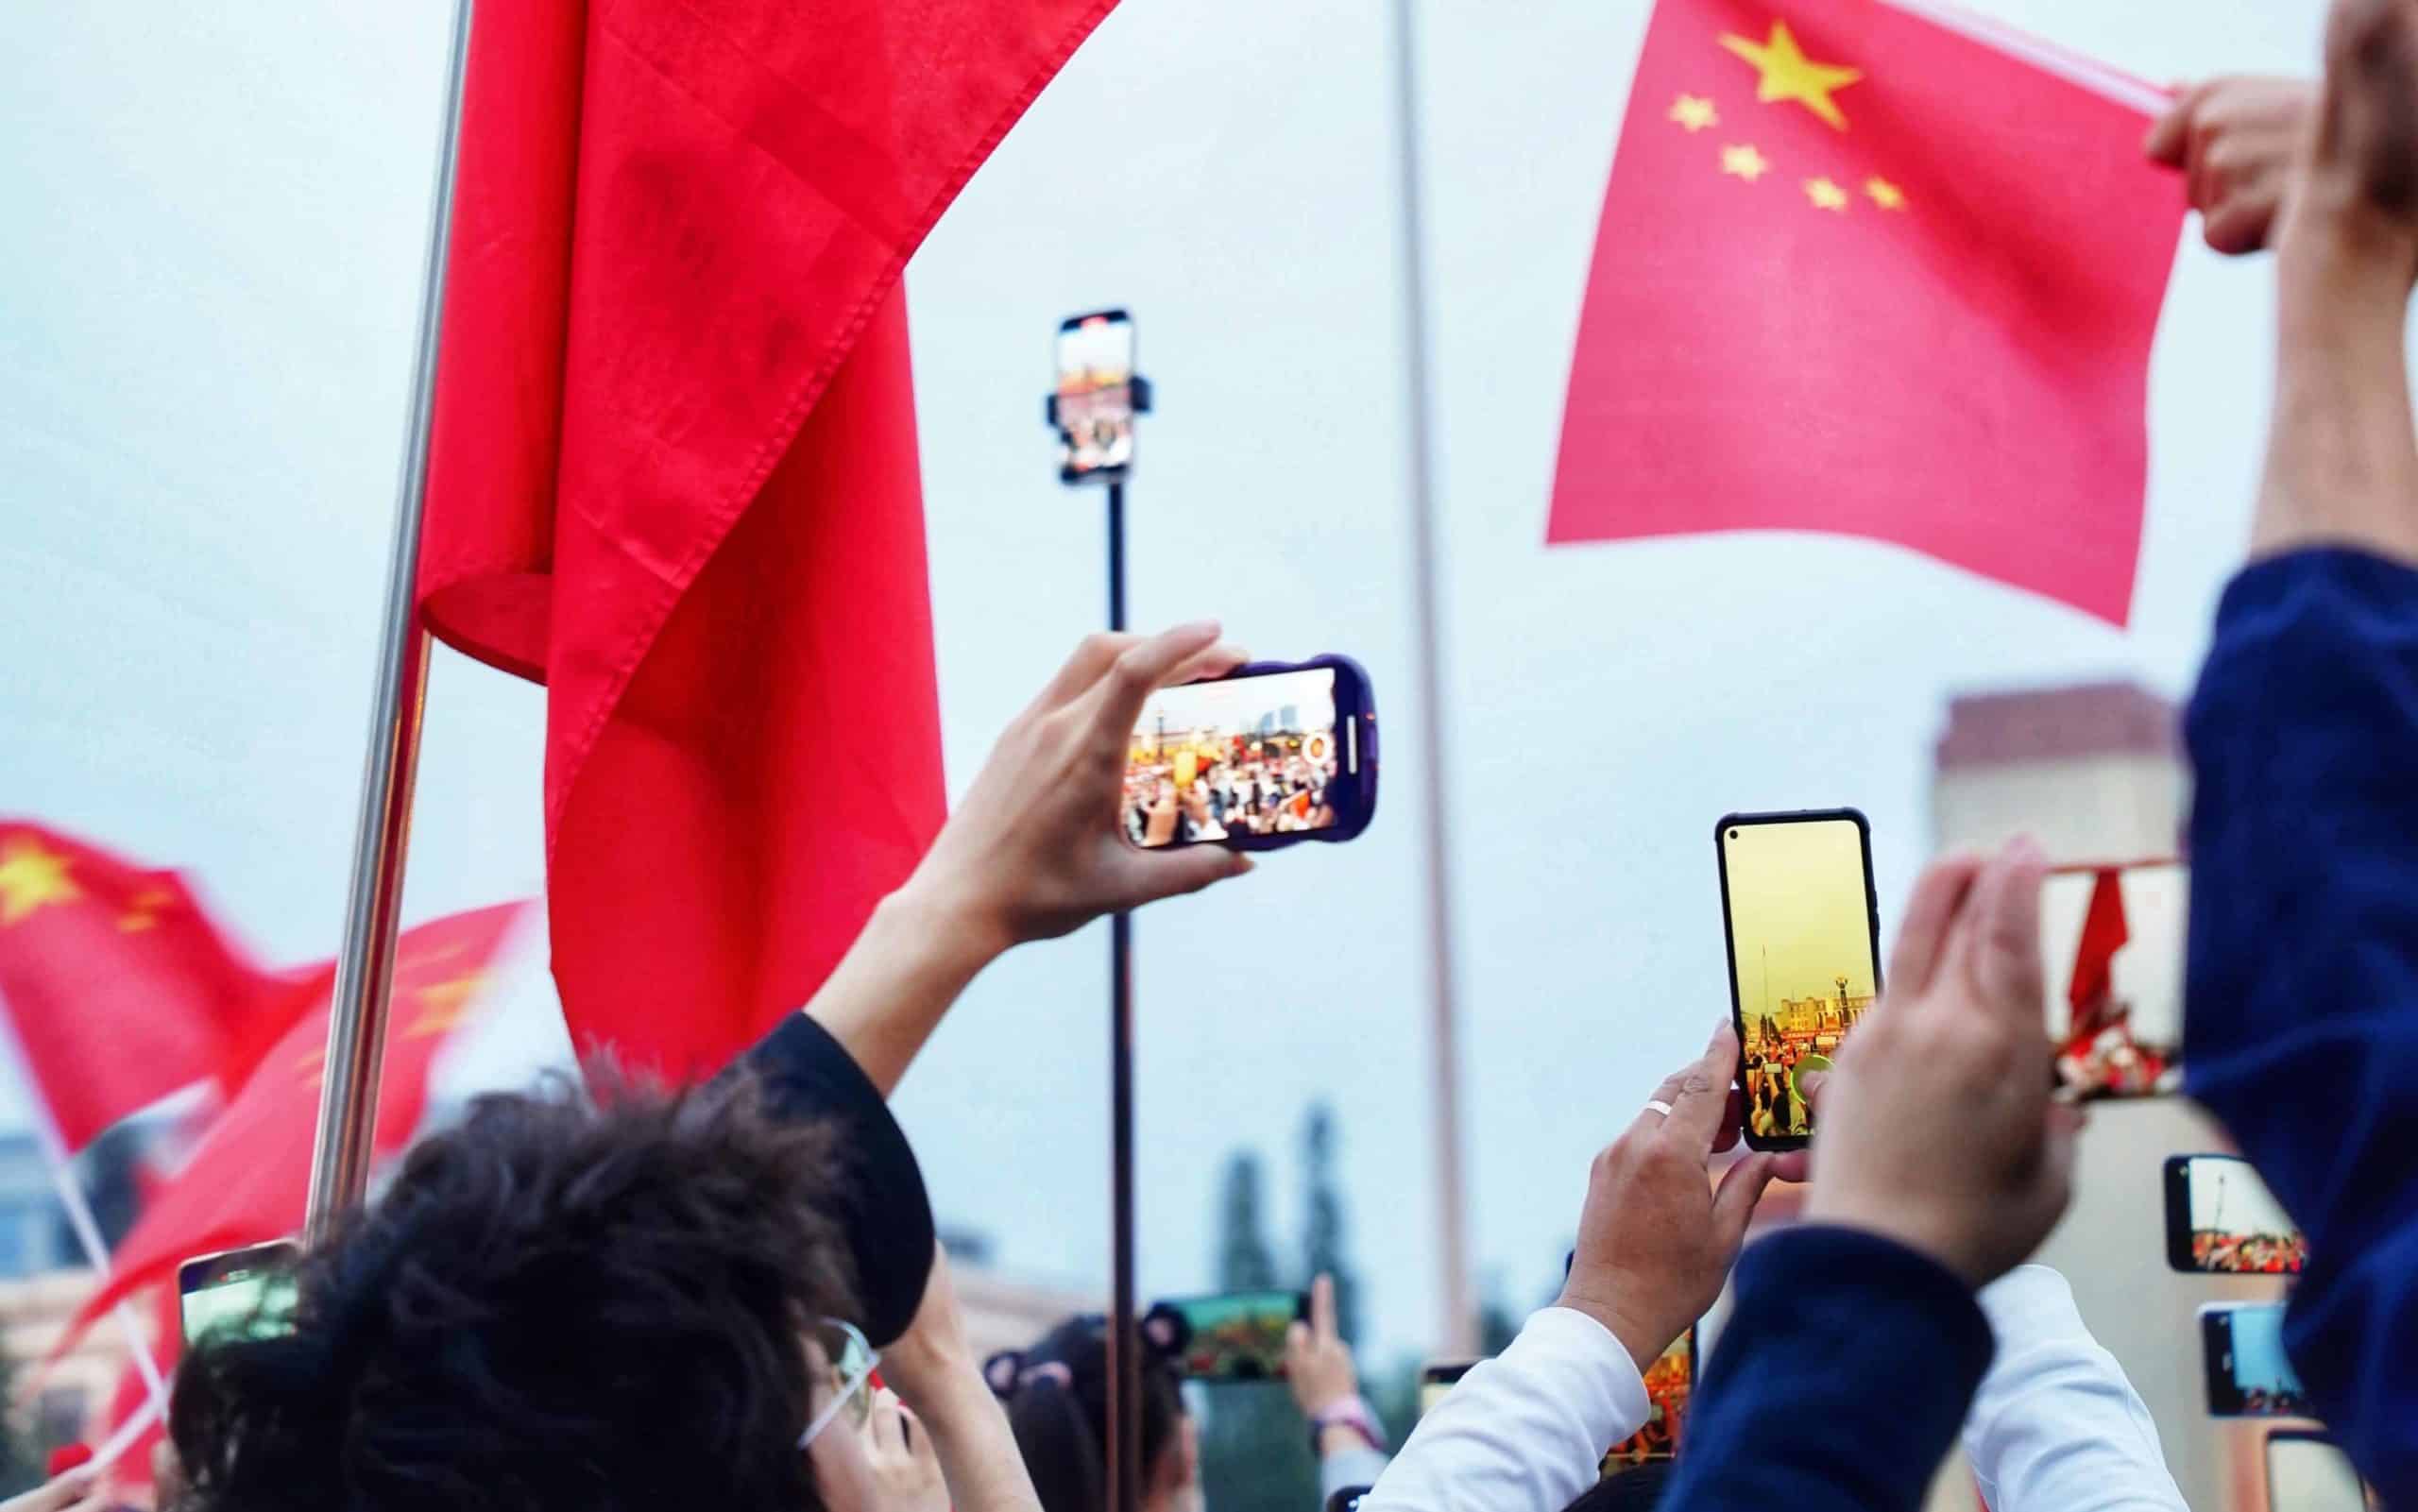 Die Schatten Seite von Social Media: Zwischen Suchtpotenzial, Zensur und dem Einfluss der KPCh. Der Lange Propaganda Arm Chinas. Die Problematik von einem rückgang Meinungsfreiheit und potenzieller Untergrabung spitzt sich zu.